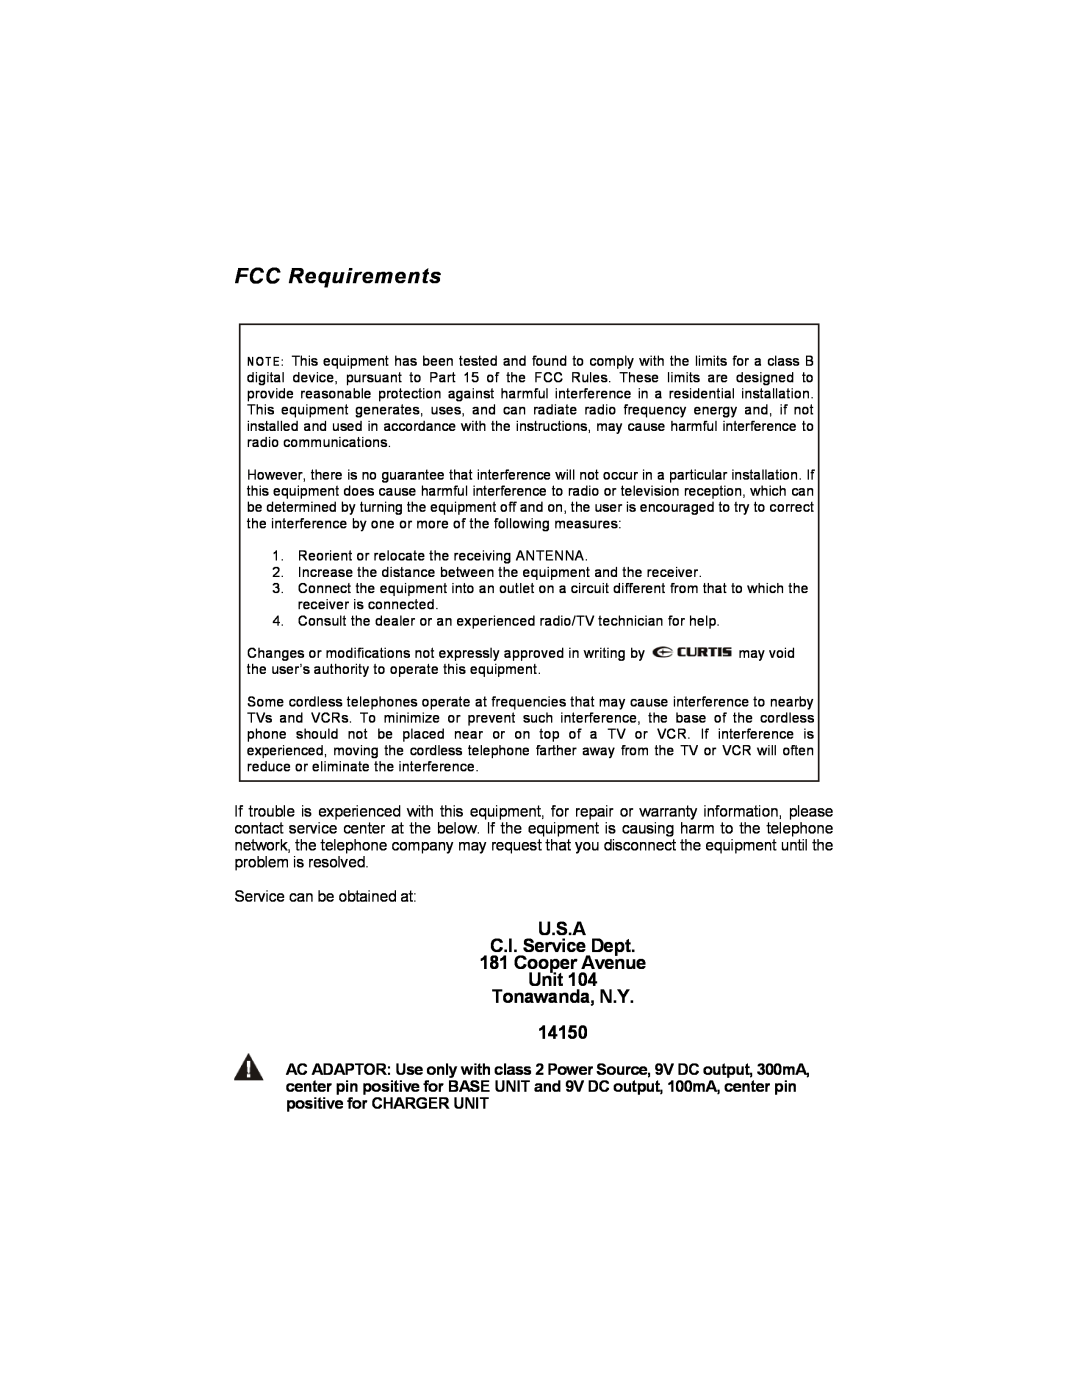 Curtis TC590 owner manual FCC Requirements, U.S.A C.I. Service Dept 181 Cooper Avenue Unit Tonawanda, N.Y 14150 